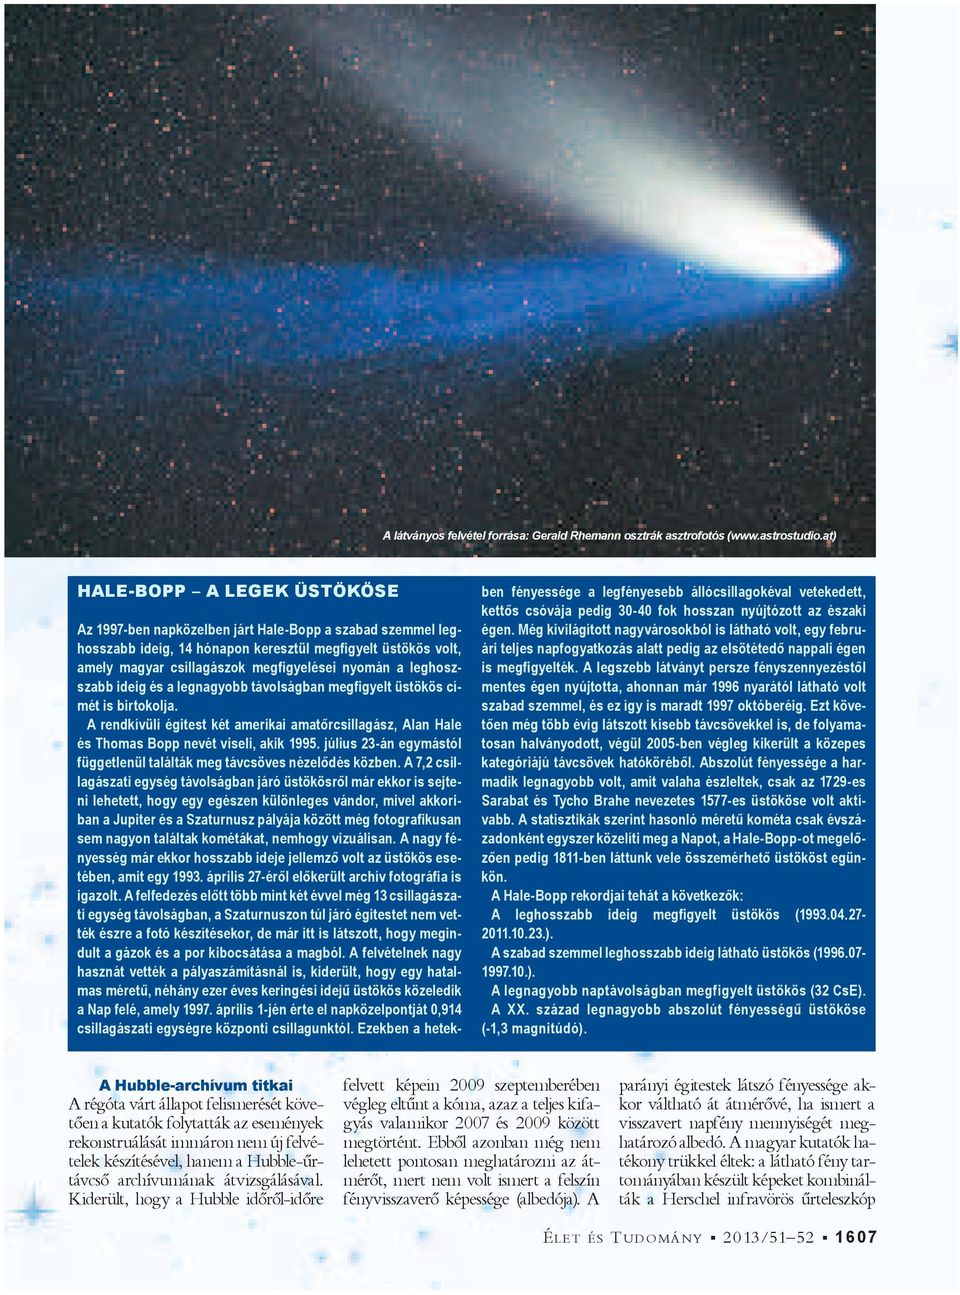 leghoszszabb ideig és a legnagyobb távolságban megigyelt üstökös címét is birtokolja. A rendkívüli égitest két amerikai amat rcsillagász, Alan Hale és Thomas Bopp nevét viseli, akik 1995.